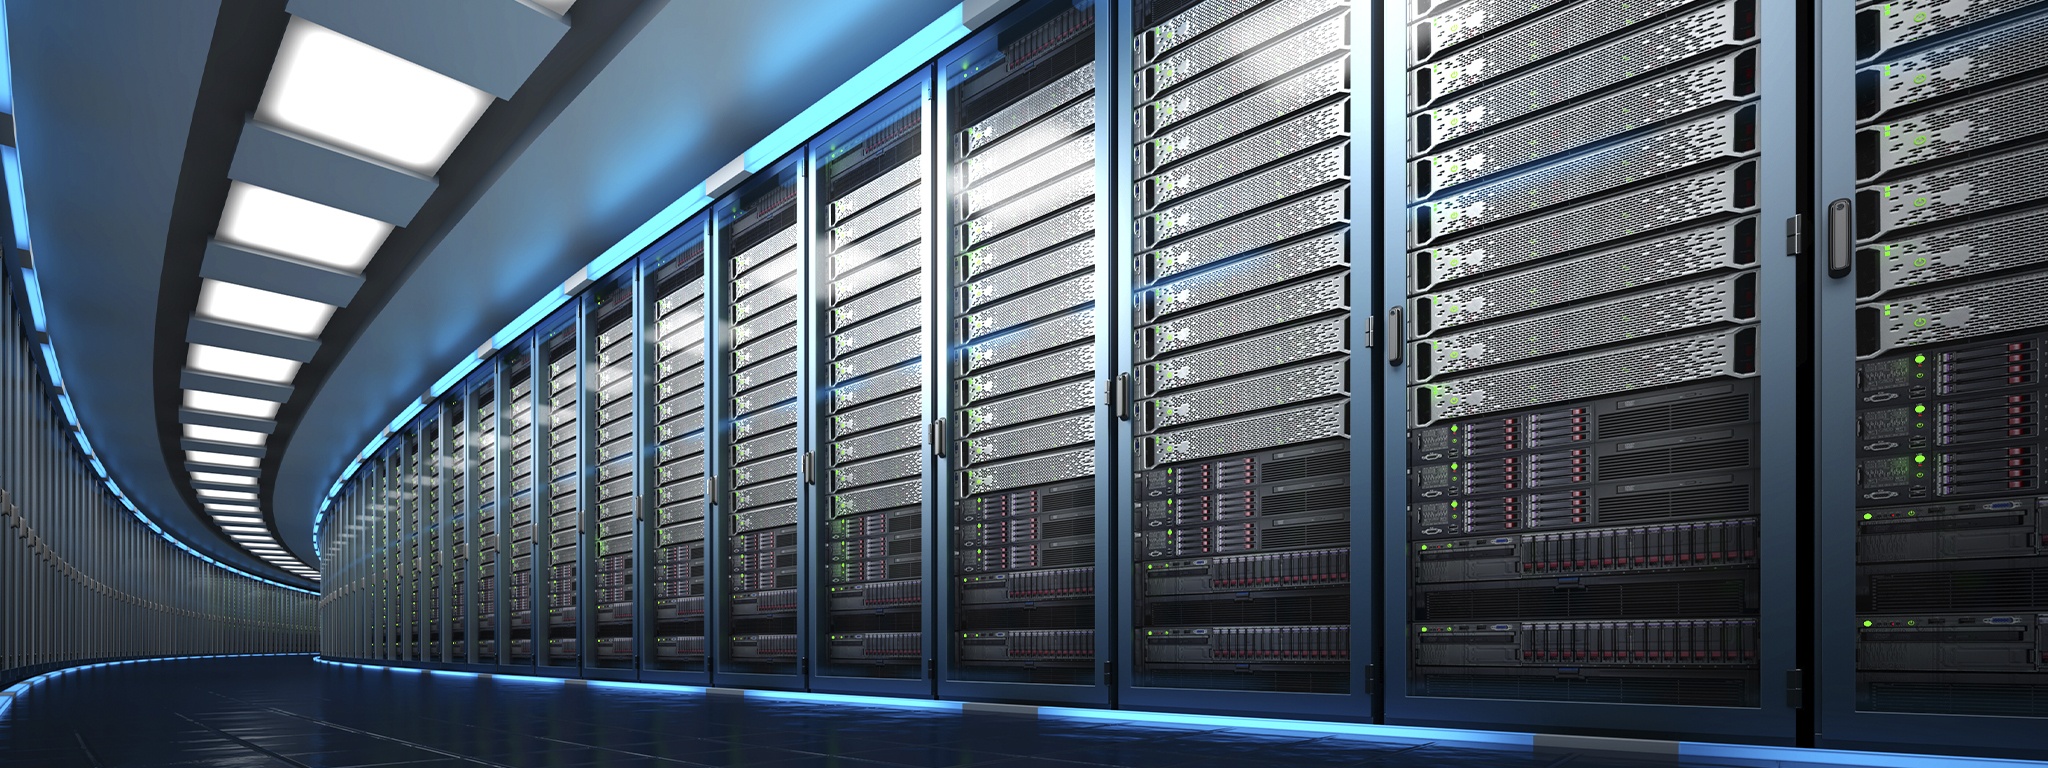 Rendu 3D d’un datacenter montrant une grande salle de serveurs avec une longue file d’unités de rack de serveurs